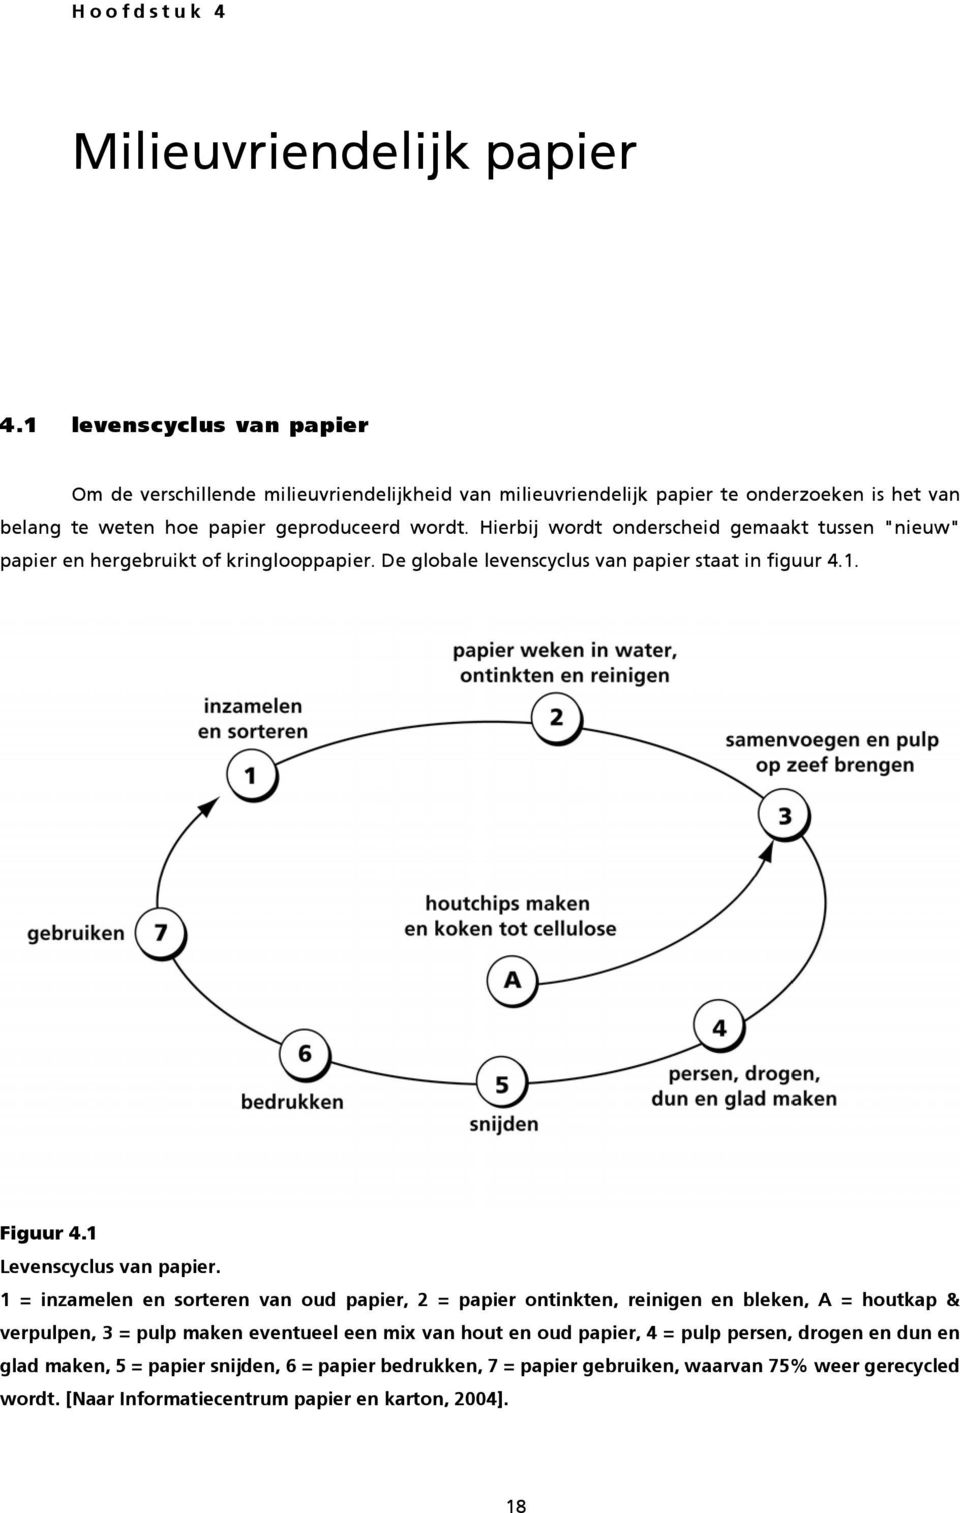 Hierbij wordt onderscheid gemaakt tussen "nieuw" papier en hergebruikt of kringlooppapier. De globale levenscyclus van papier staat in figuur 4.1. Figuur 4.1 Levenscyclus van papier.